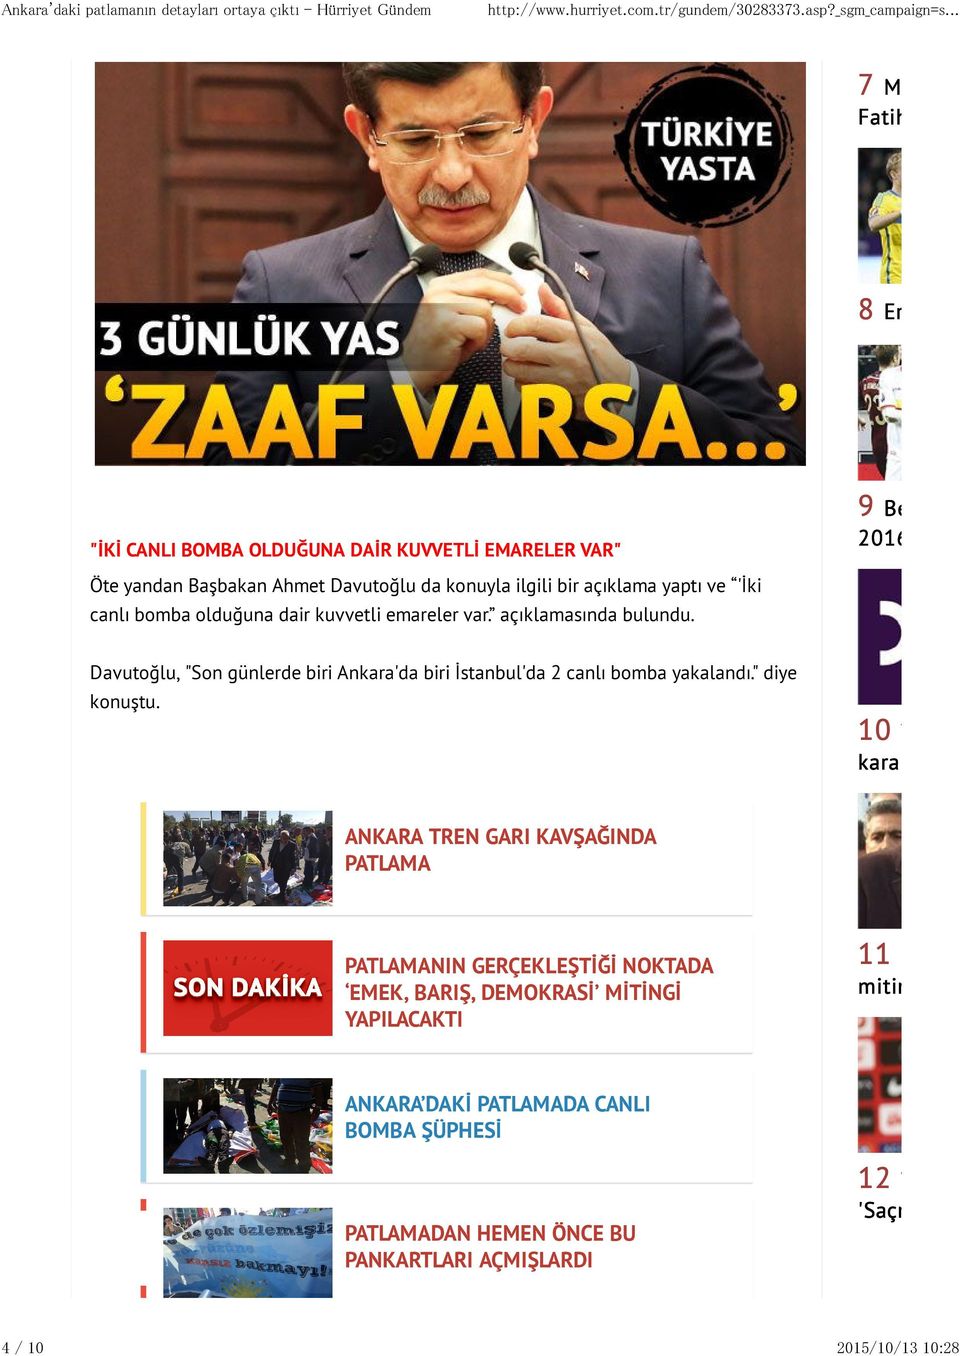 Davutoğlu, "Son günlerde biri Ankara'da biri Đstanbul'da 2 canlı bomba yakalandı." diye konuştu.